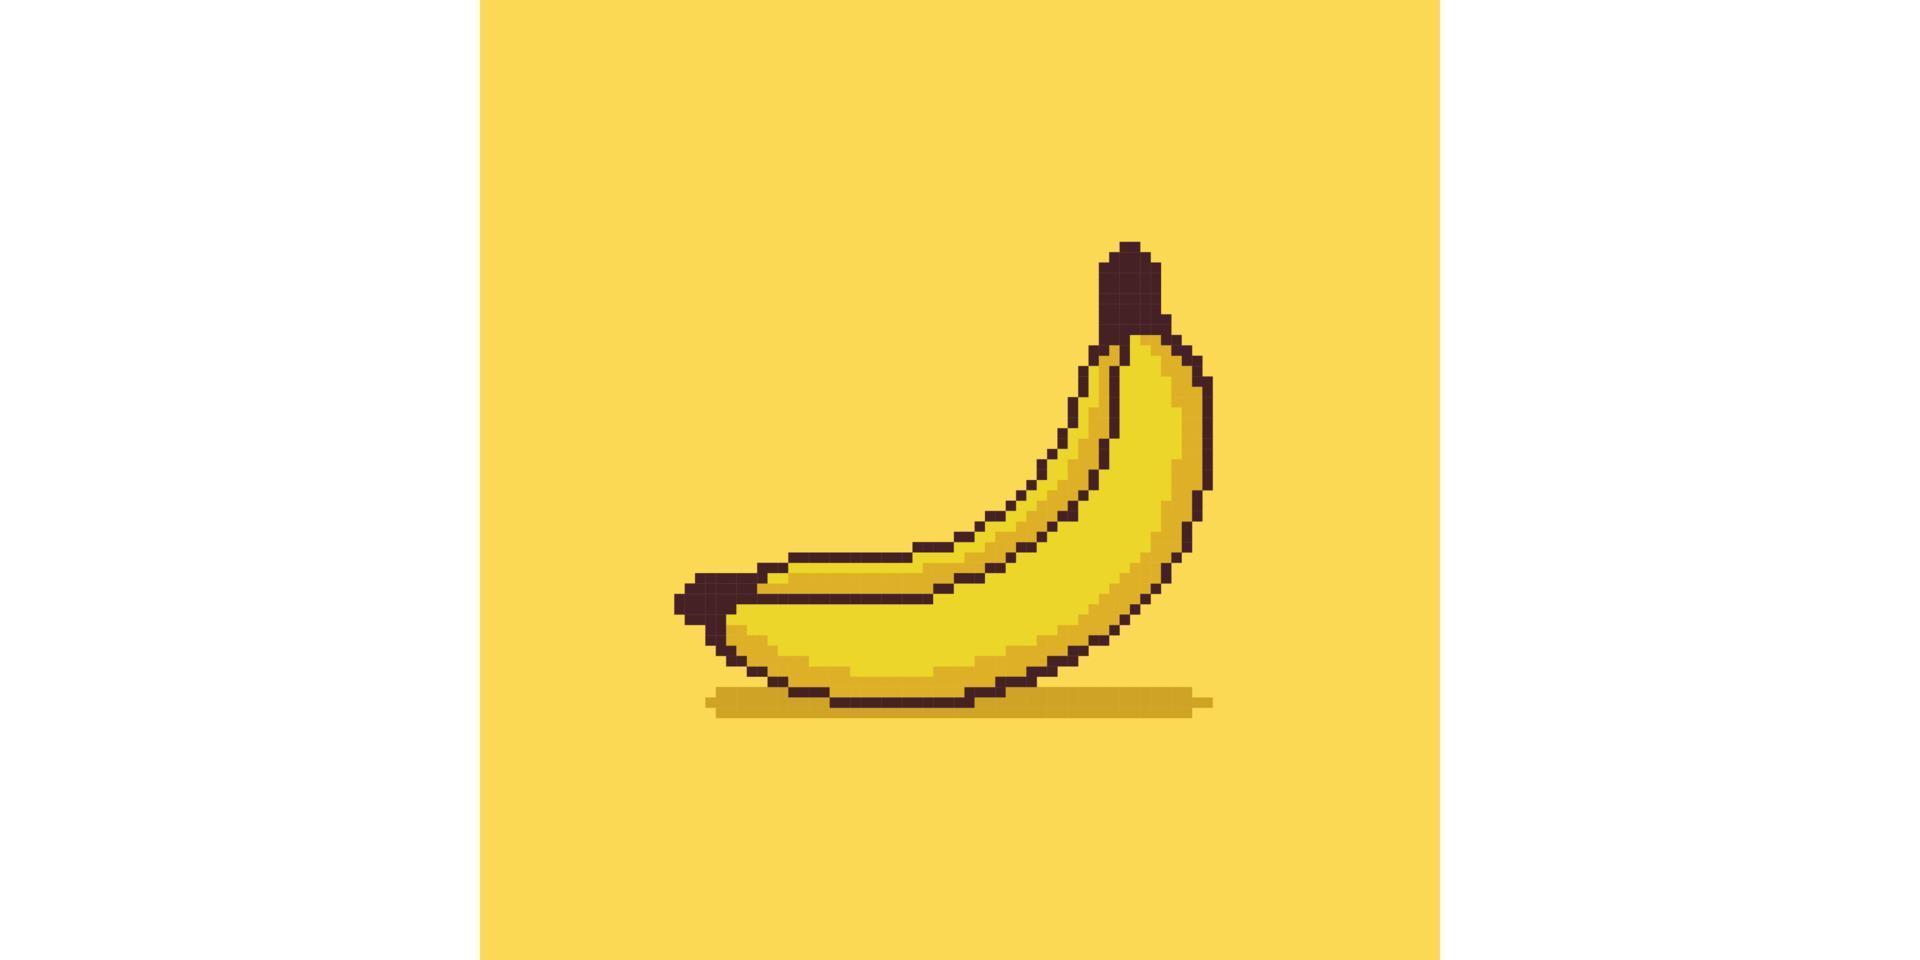 personnage de banane pixel art sur fond de bannière jaune vecteur